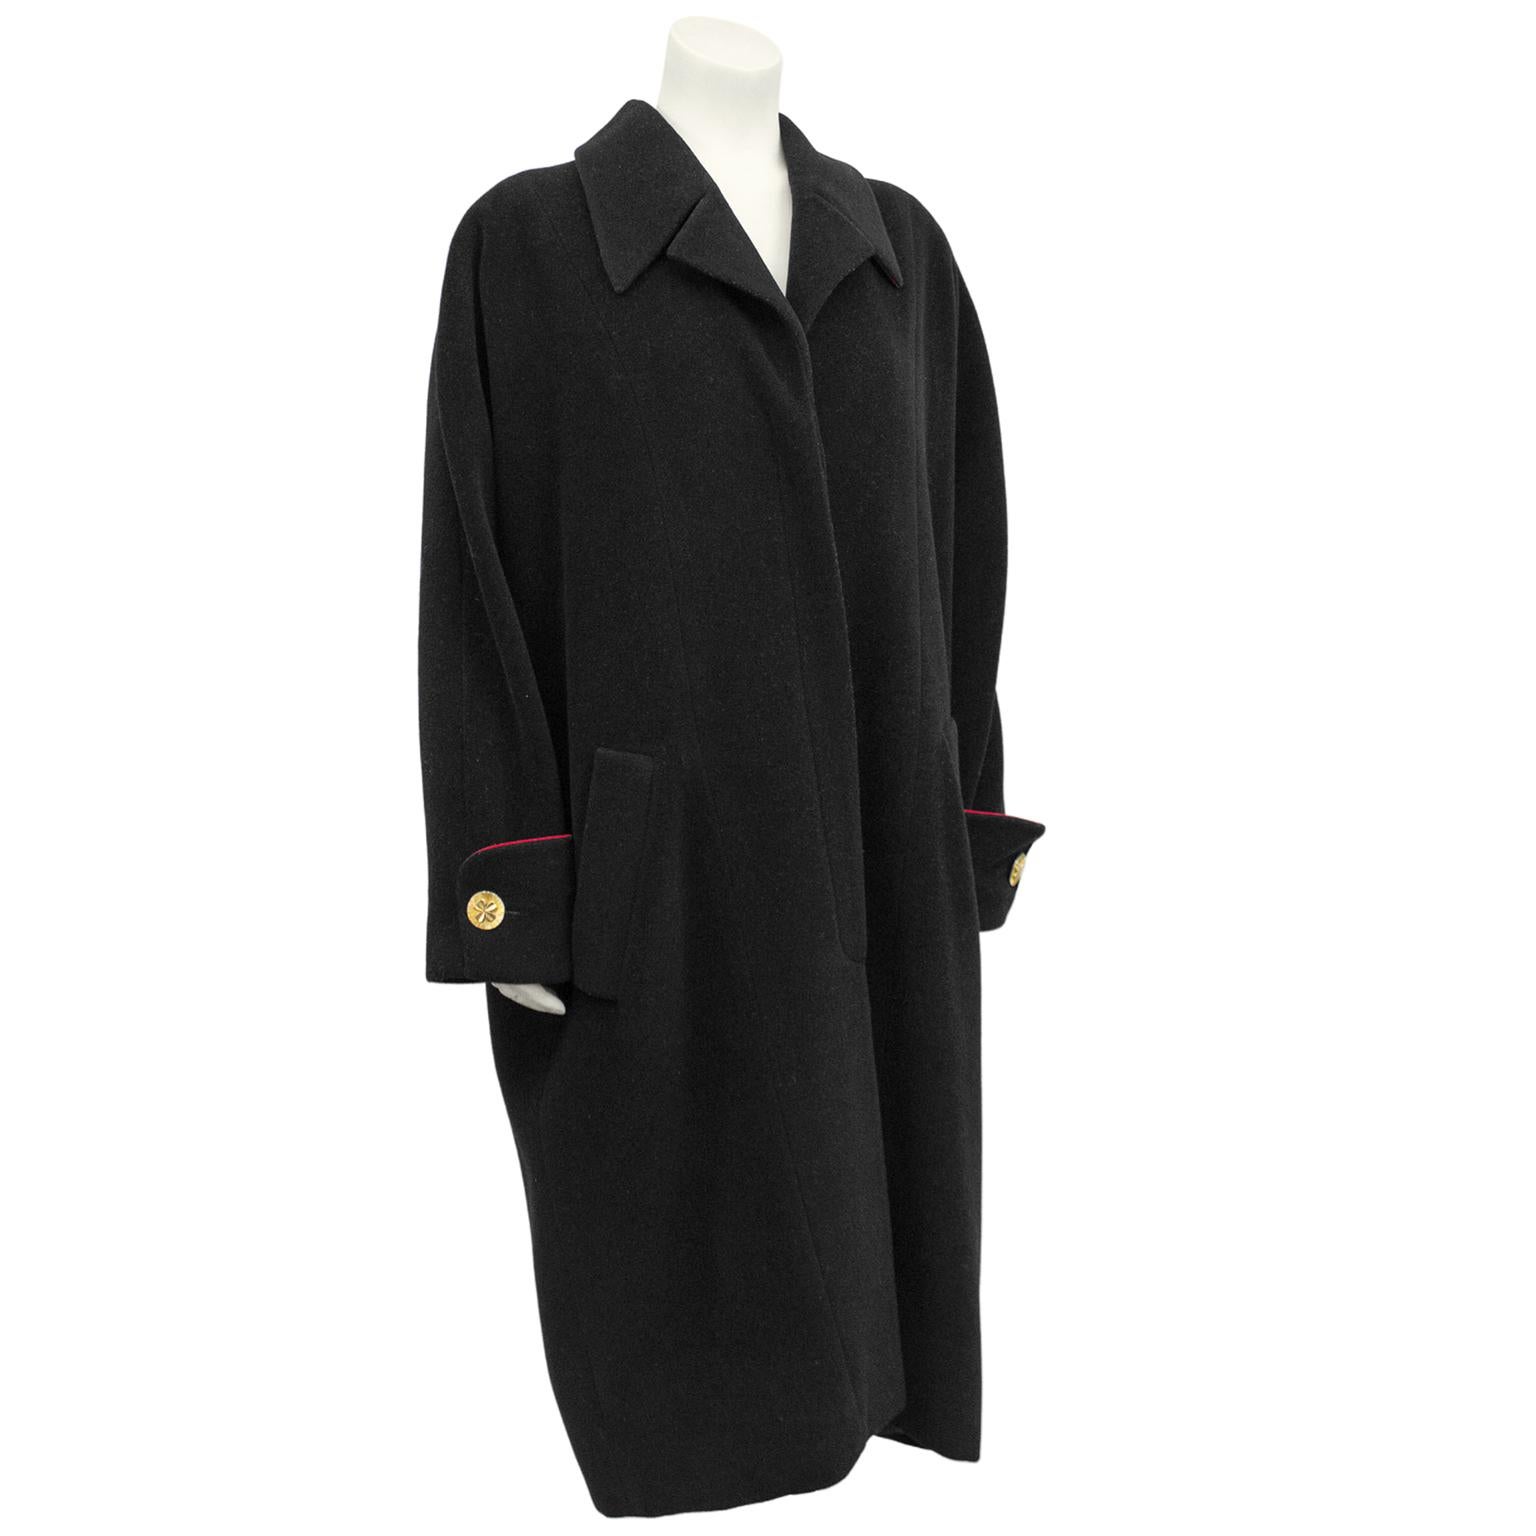 Manteau cocon surdimensionné en laine noire Chanel des années 1990, avec un passepoil rouge sur la grande manchette française. Un look classique, oversize, aux épaules tombantes, chic sur toutes les formes et toutes les tailles. Doublure et bordure